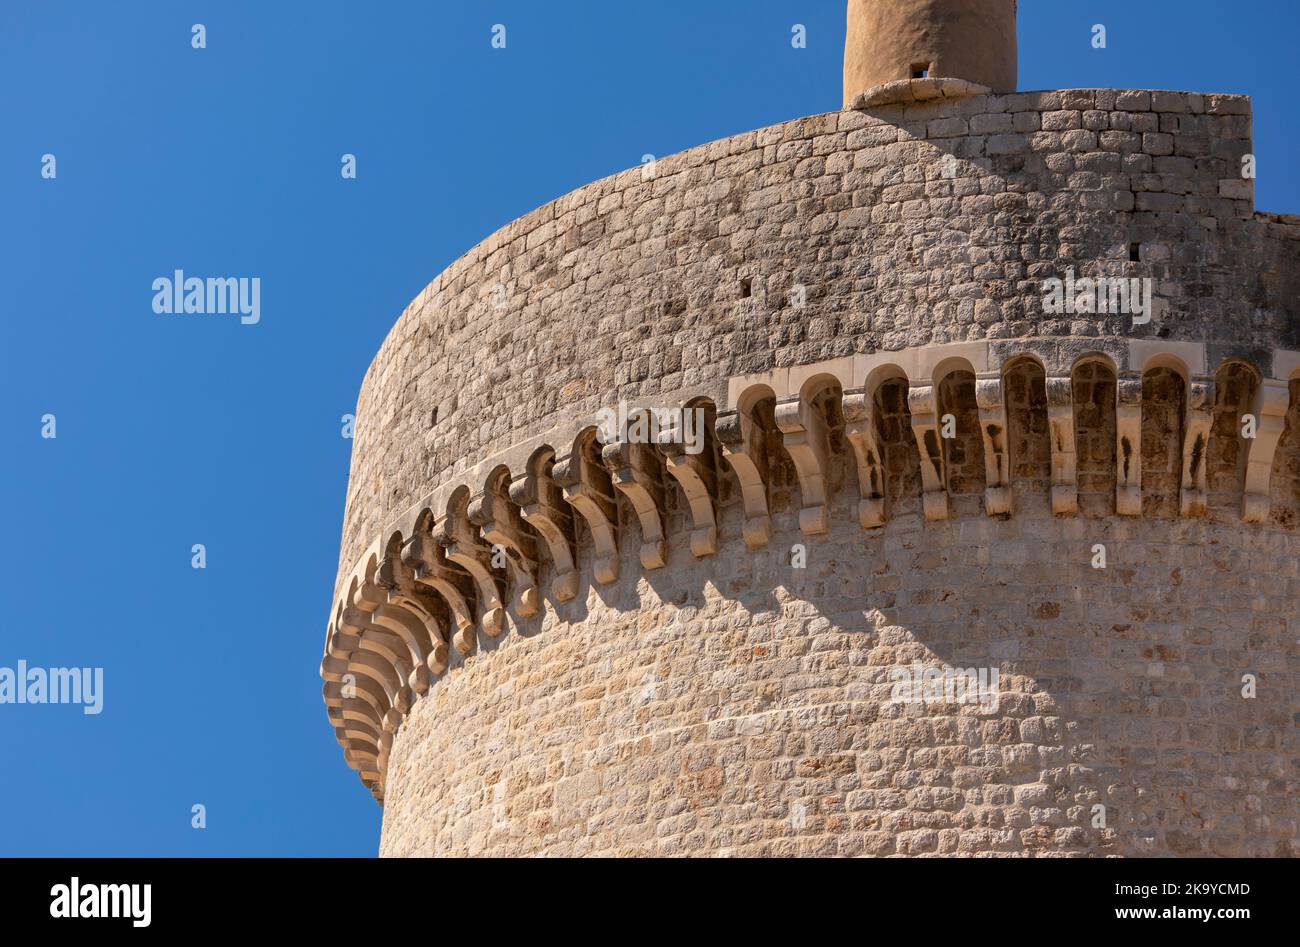 DUBROVNIK, CROATIE, EUROPE - la Tour Minceta dans la ville fortifiée de Dubrovnik sur la côte de la Dalmation. Banque D'Images